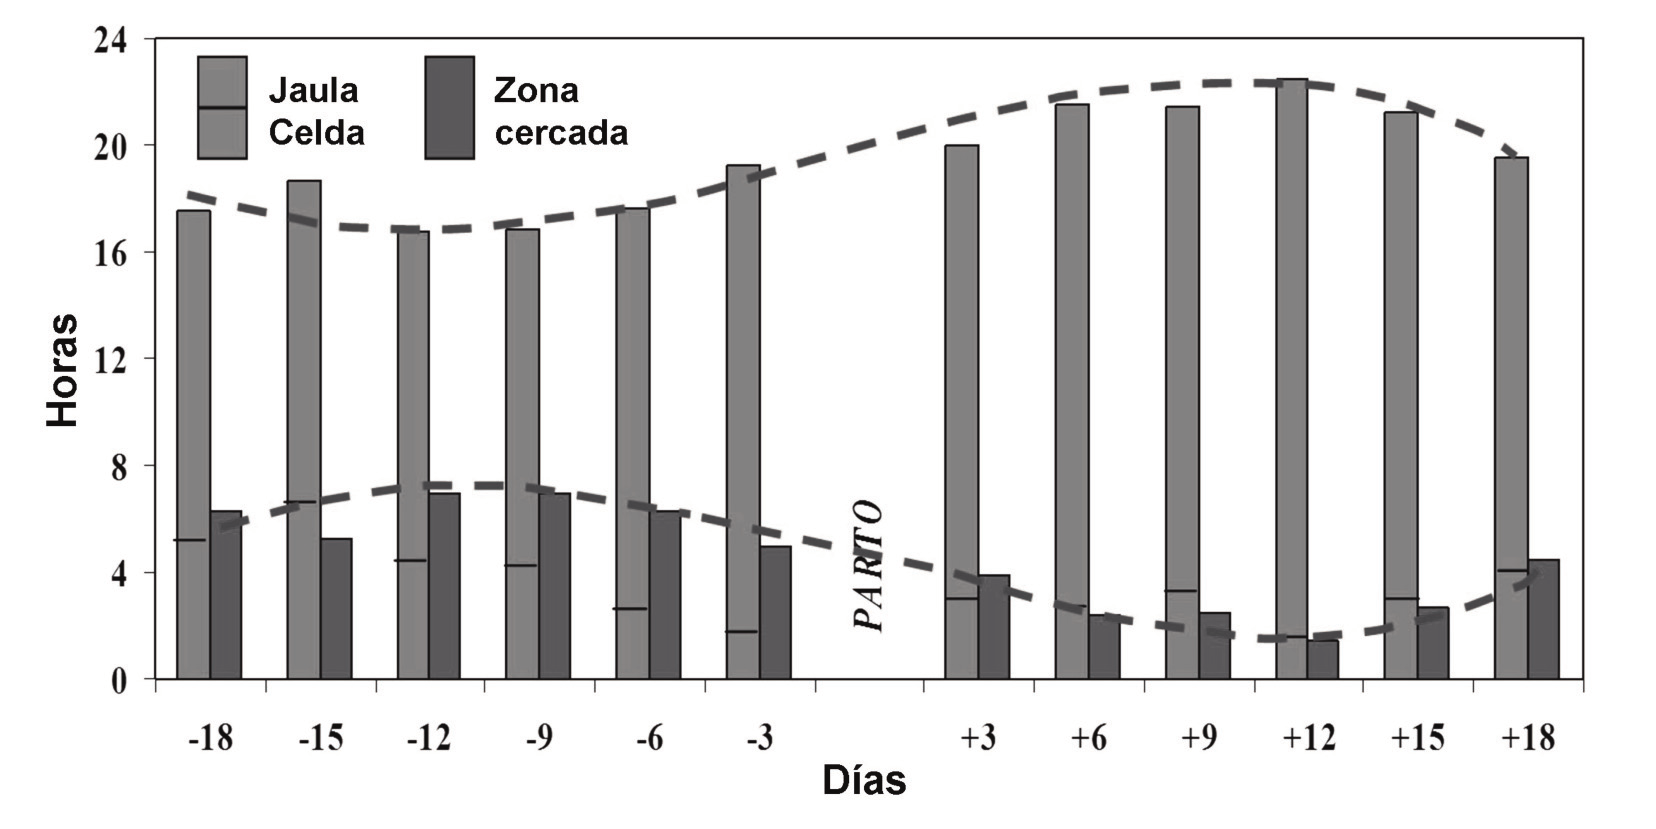 338 González-Redondo et al. ITEA (2015), Vol. 111 (4), 326-347 Figura 2.